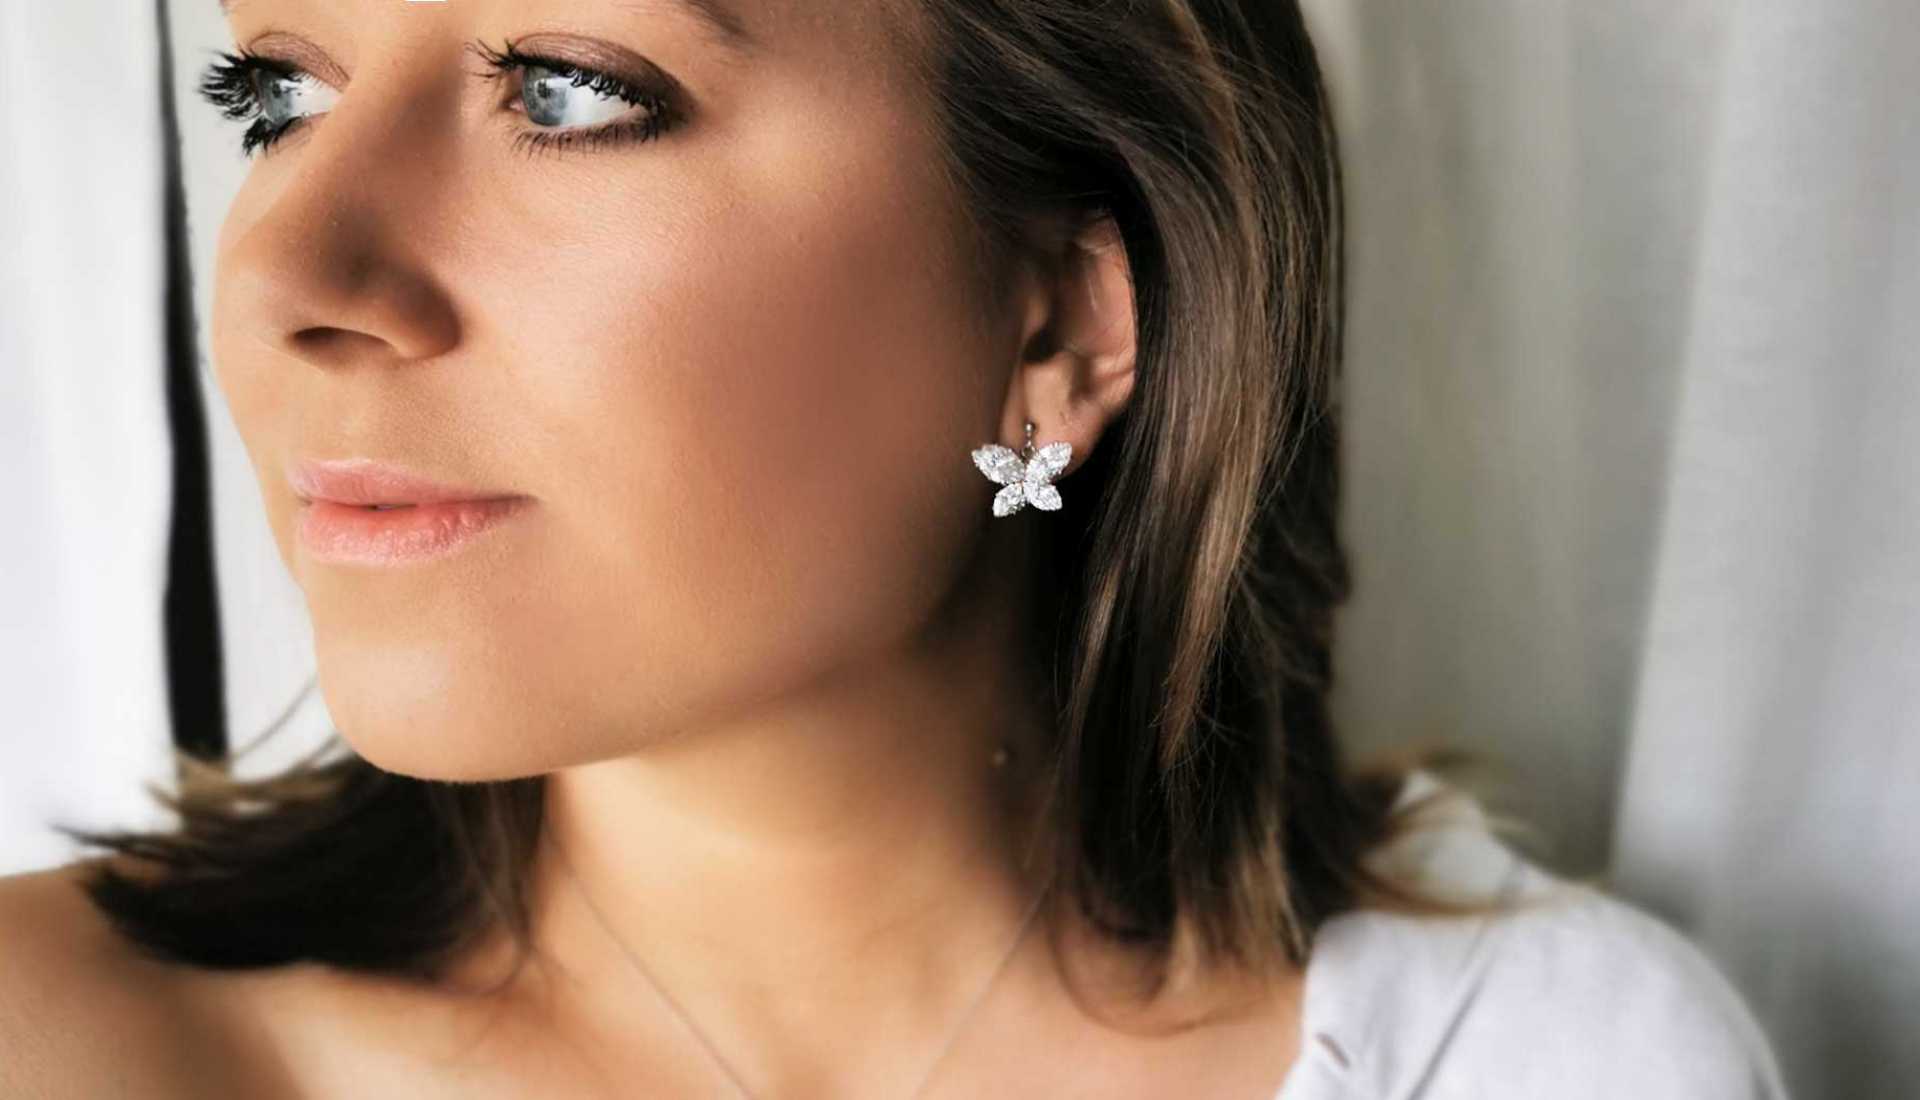 Burrefly earrings from Jewelry by Moette